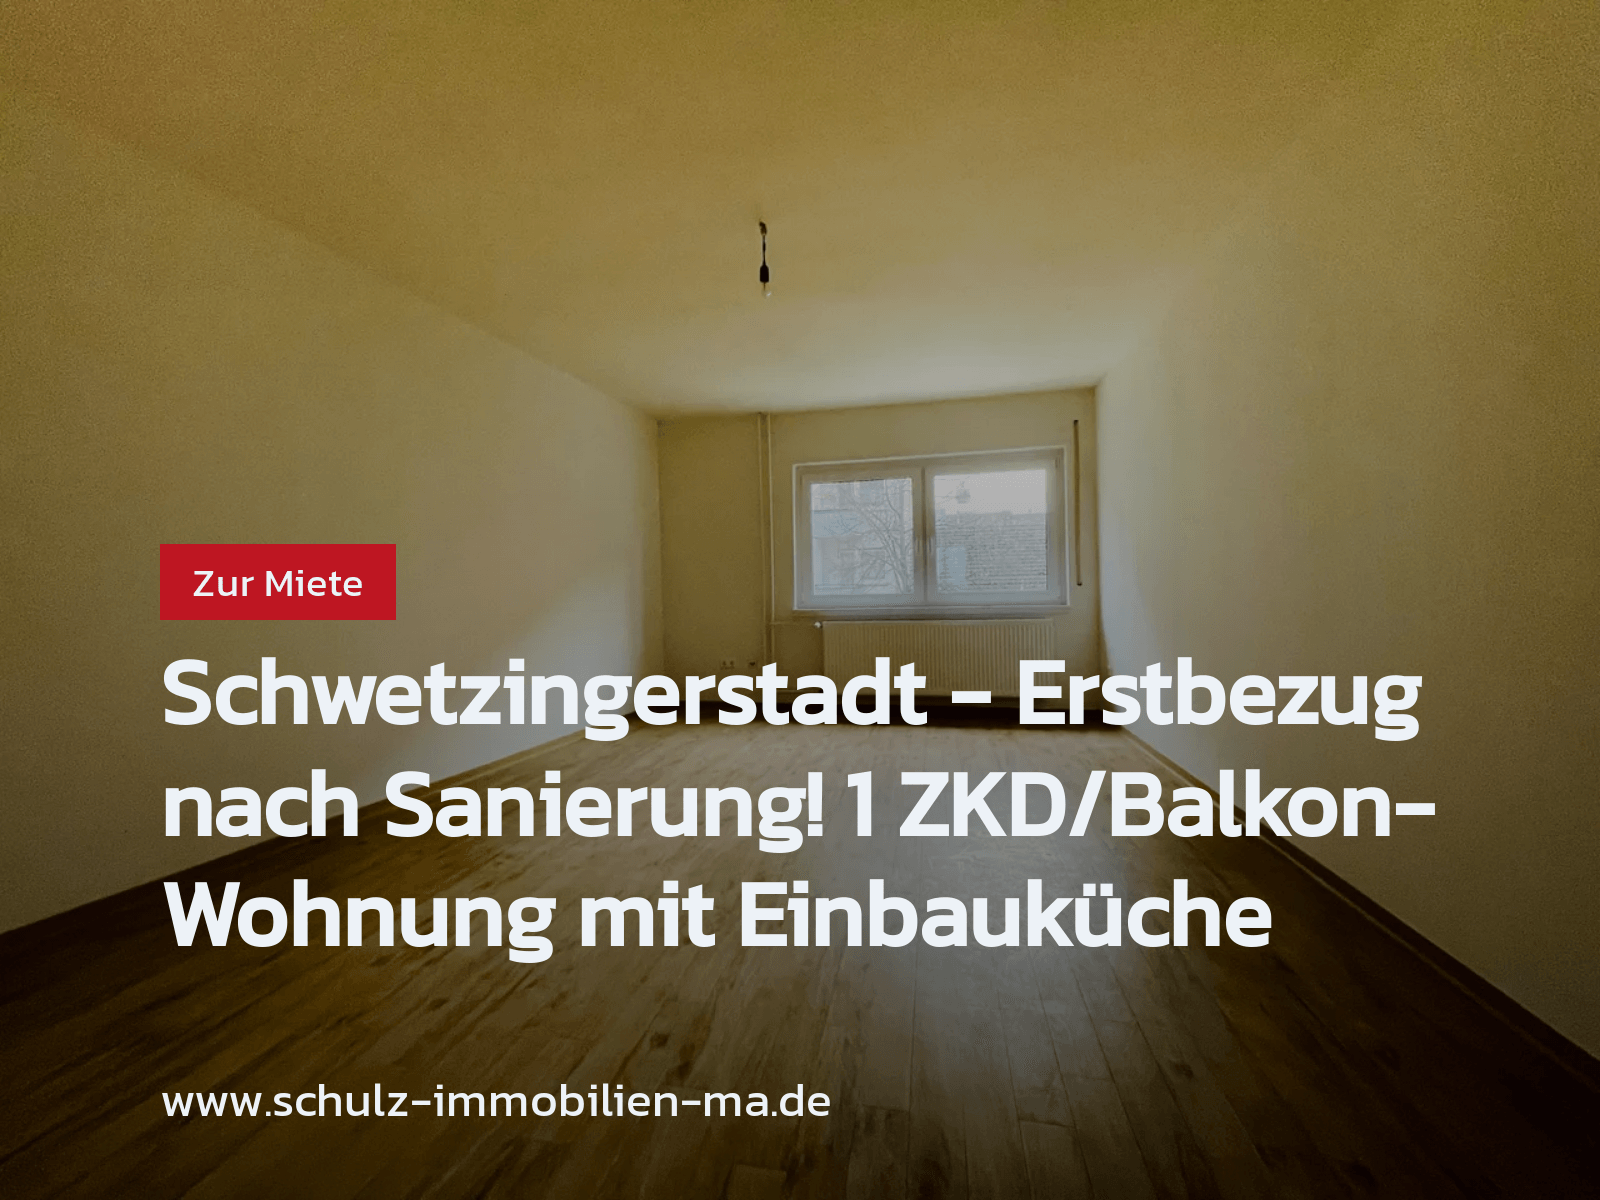 Neu im Angebot: Schwetzingerstadt – Erstbezug nach Sanierung! 1 ZKD/Balkon-Wohnung mit Einbauküche